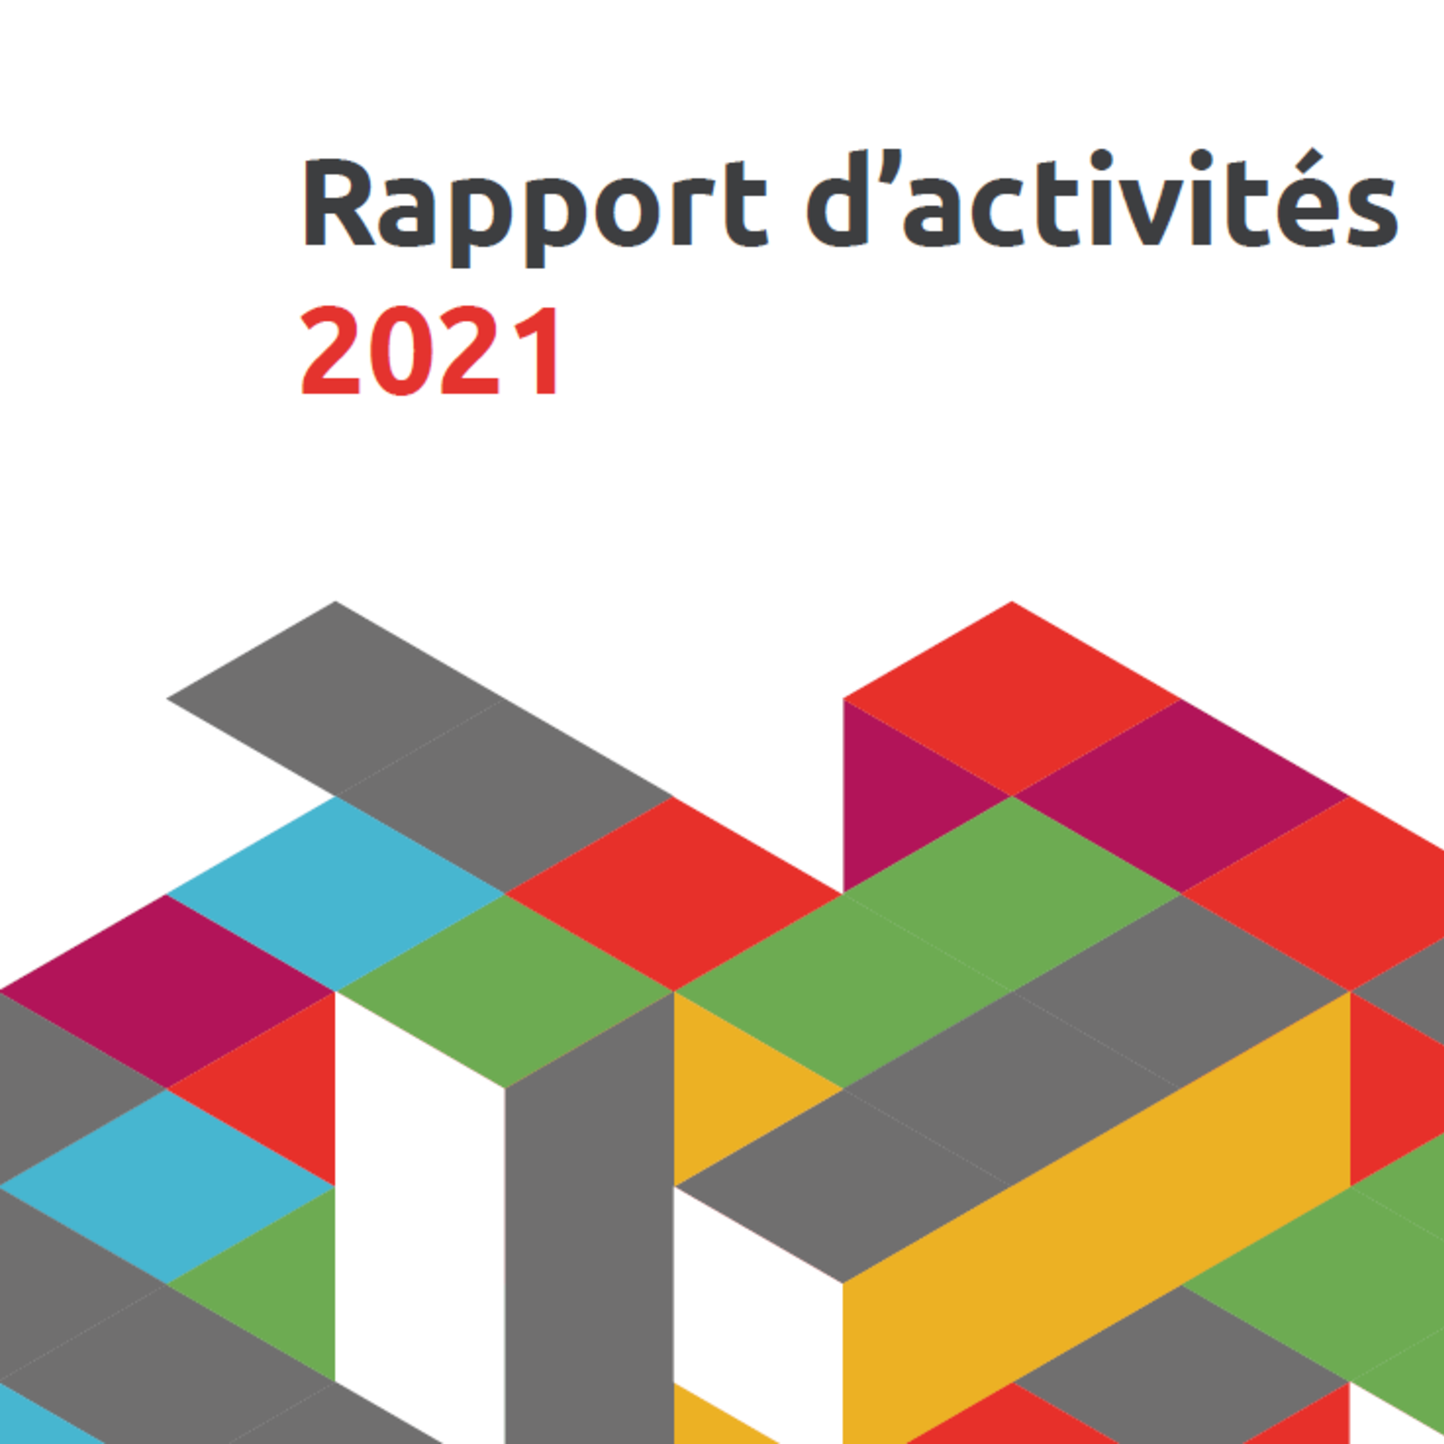 Le rapport d'activités 2021 du RVAJ est disponible